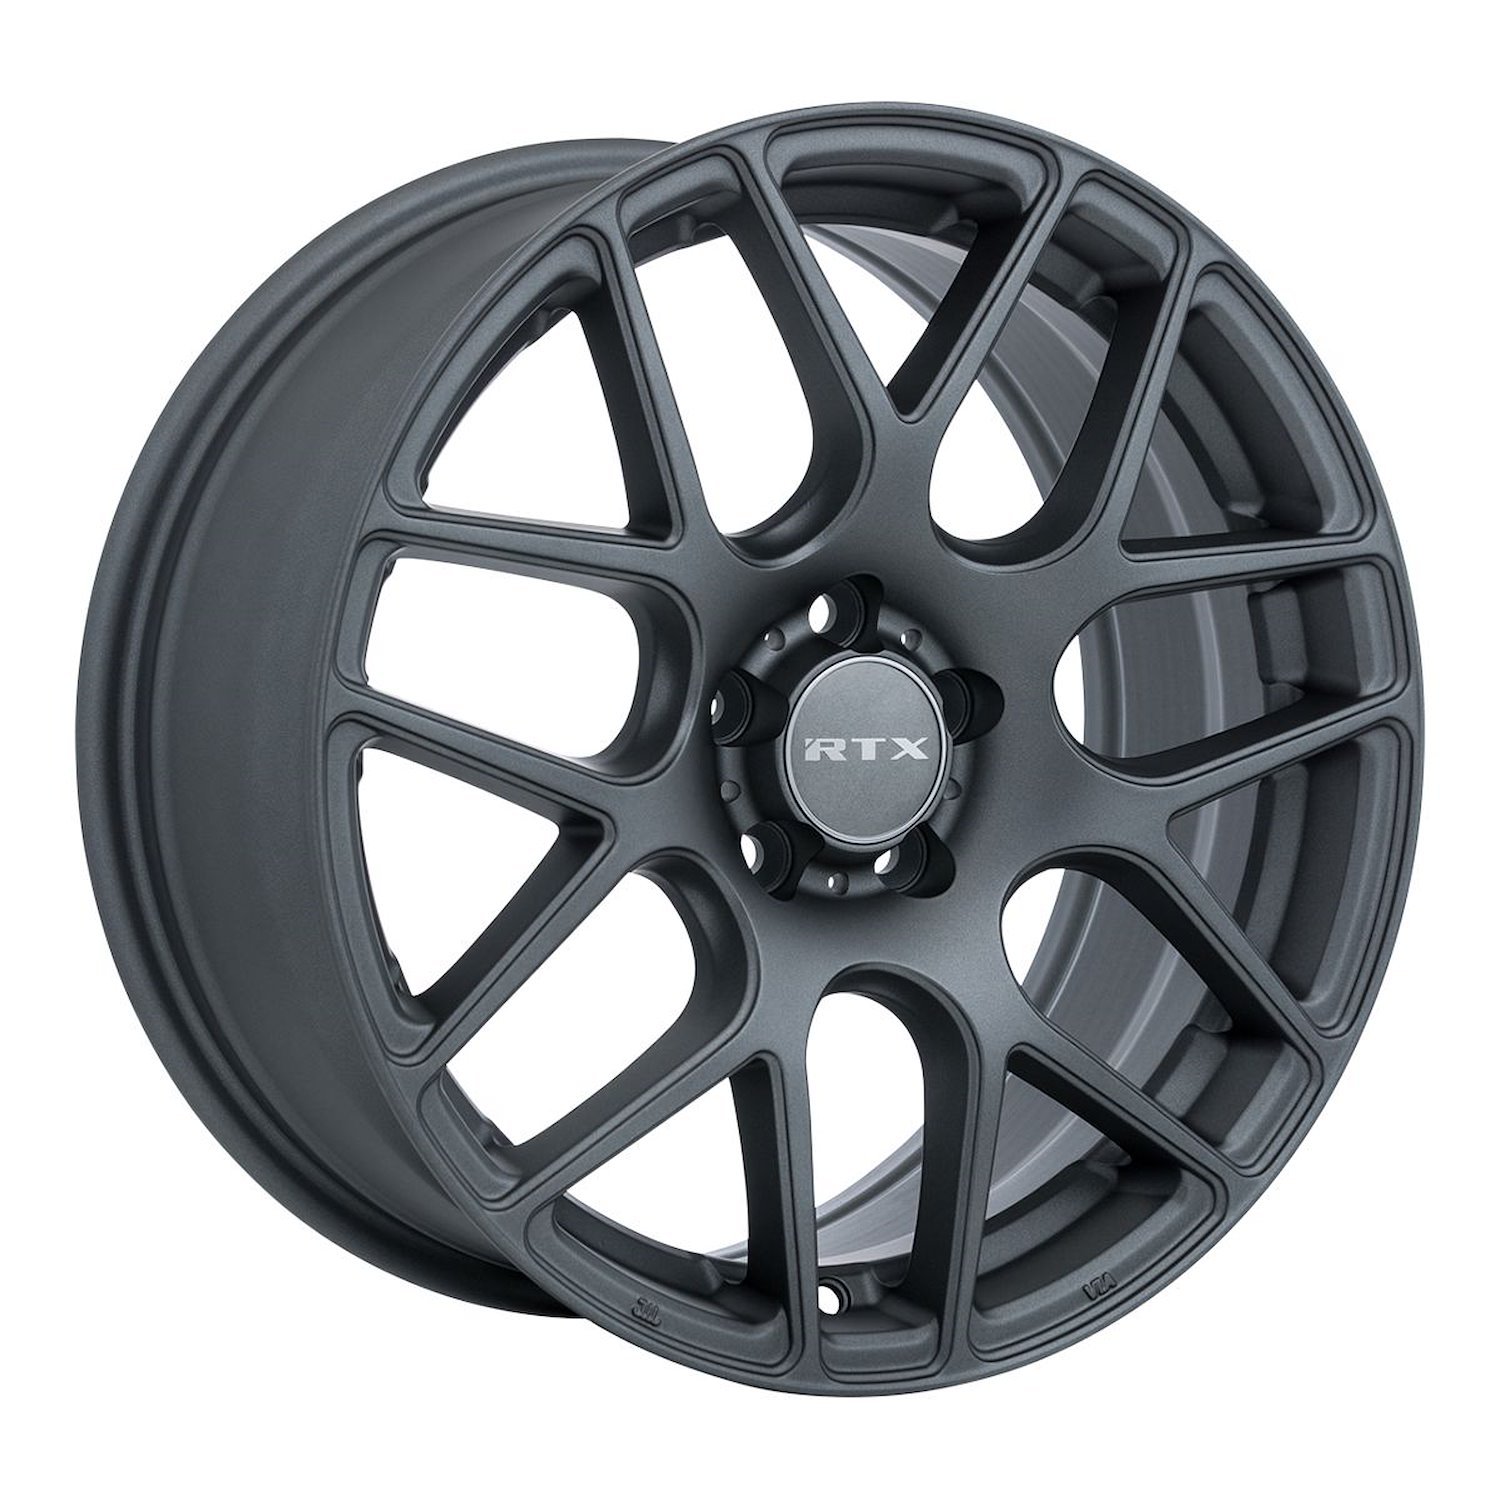 082786 RTX-Series Envy Wheel [Size: 17" x 7.50"] Matte Gunmetal Finish